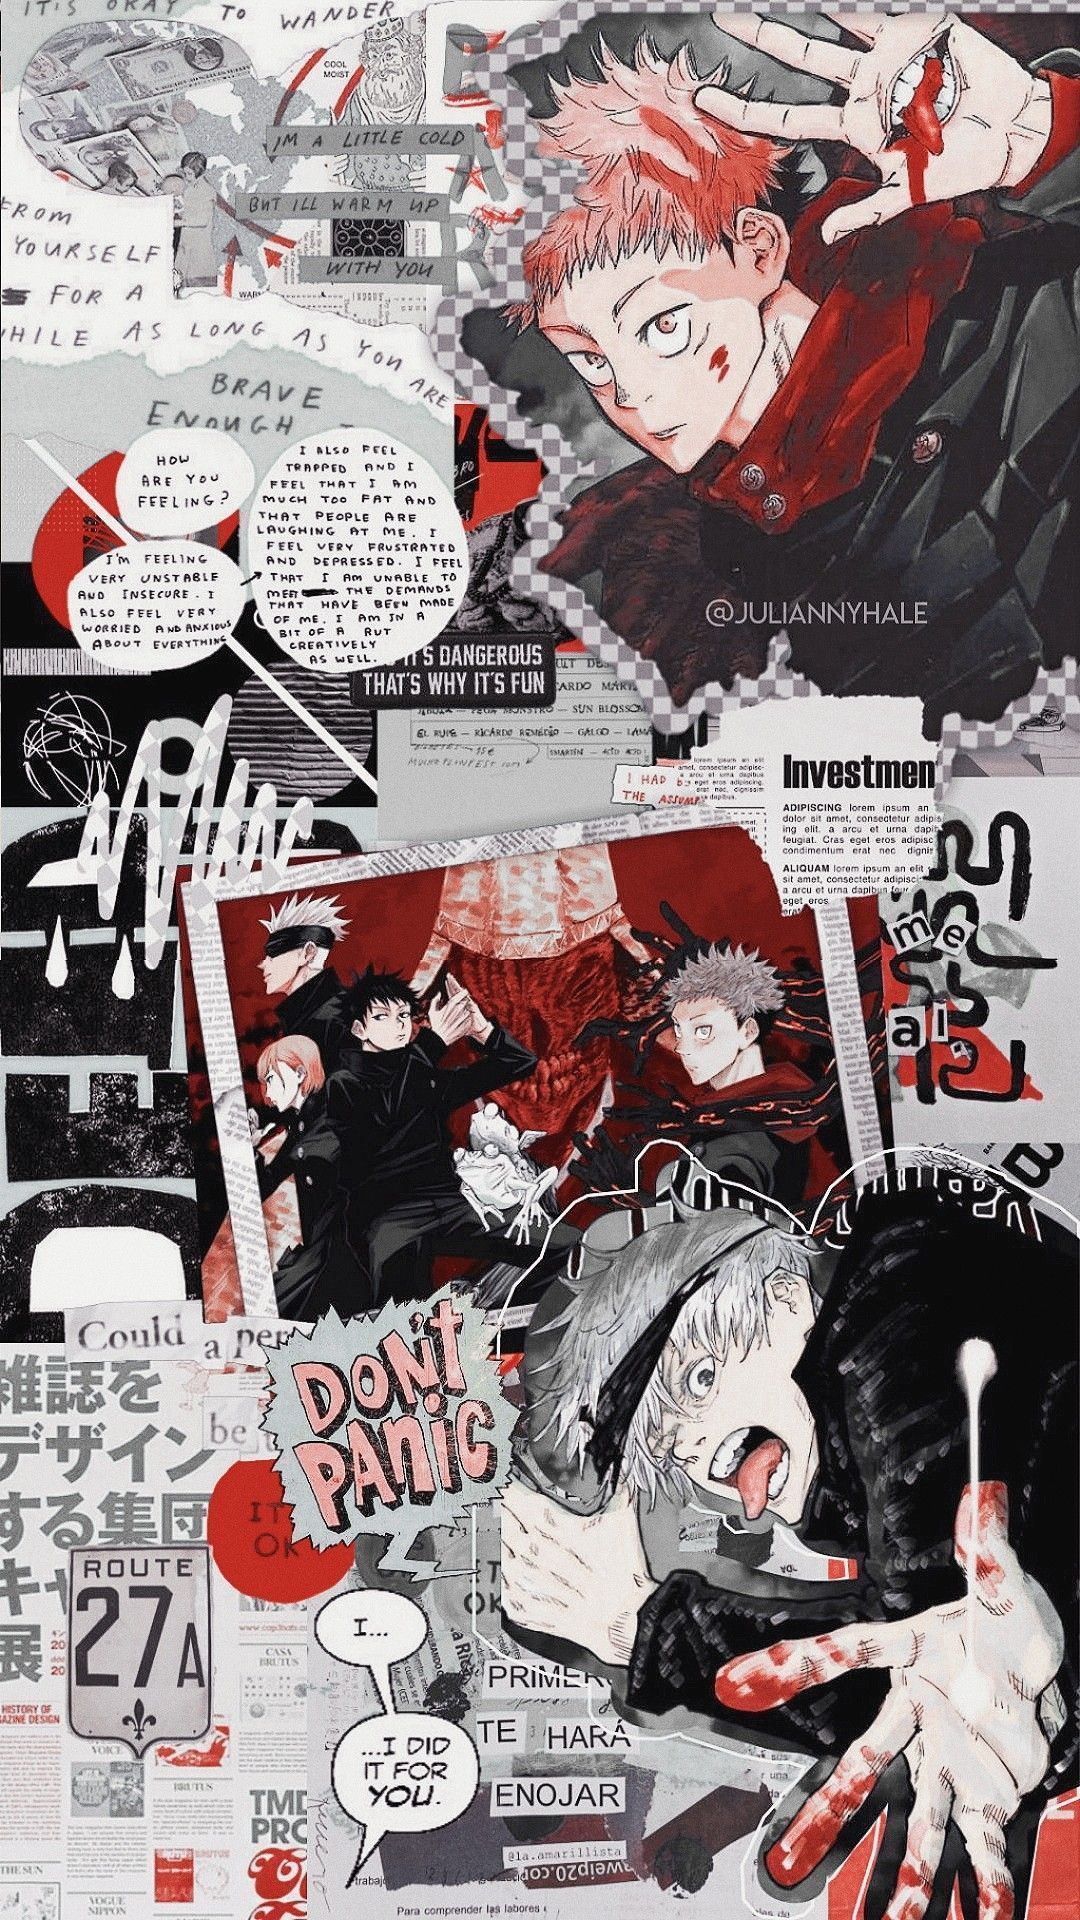 Jjk Manga Wallpapers - Wallpaper Cave